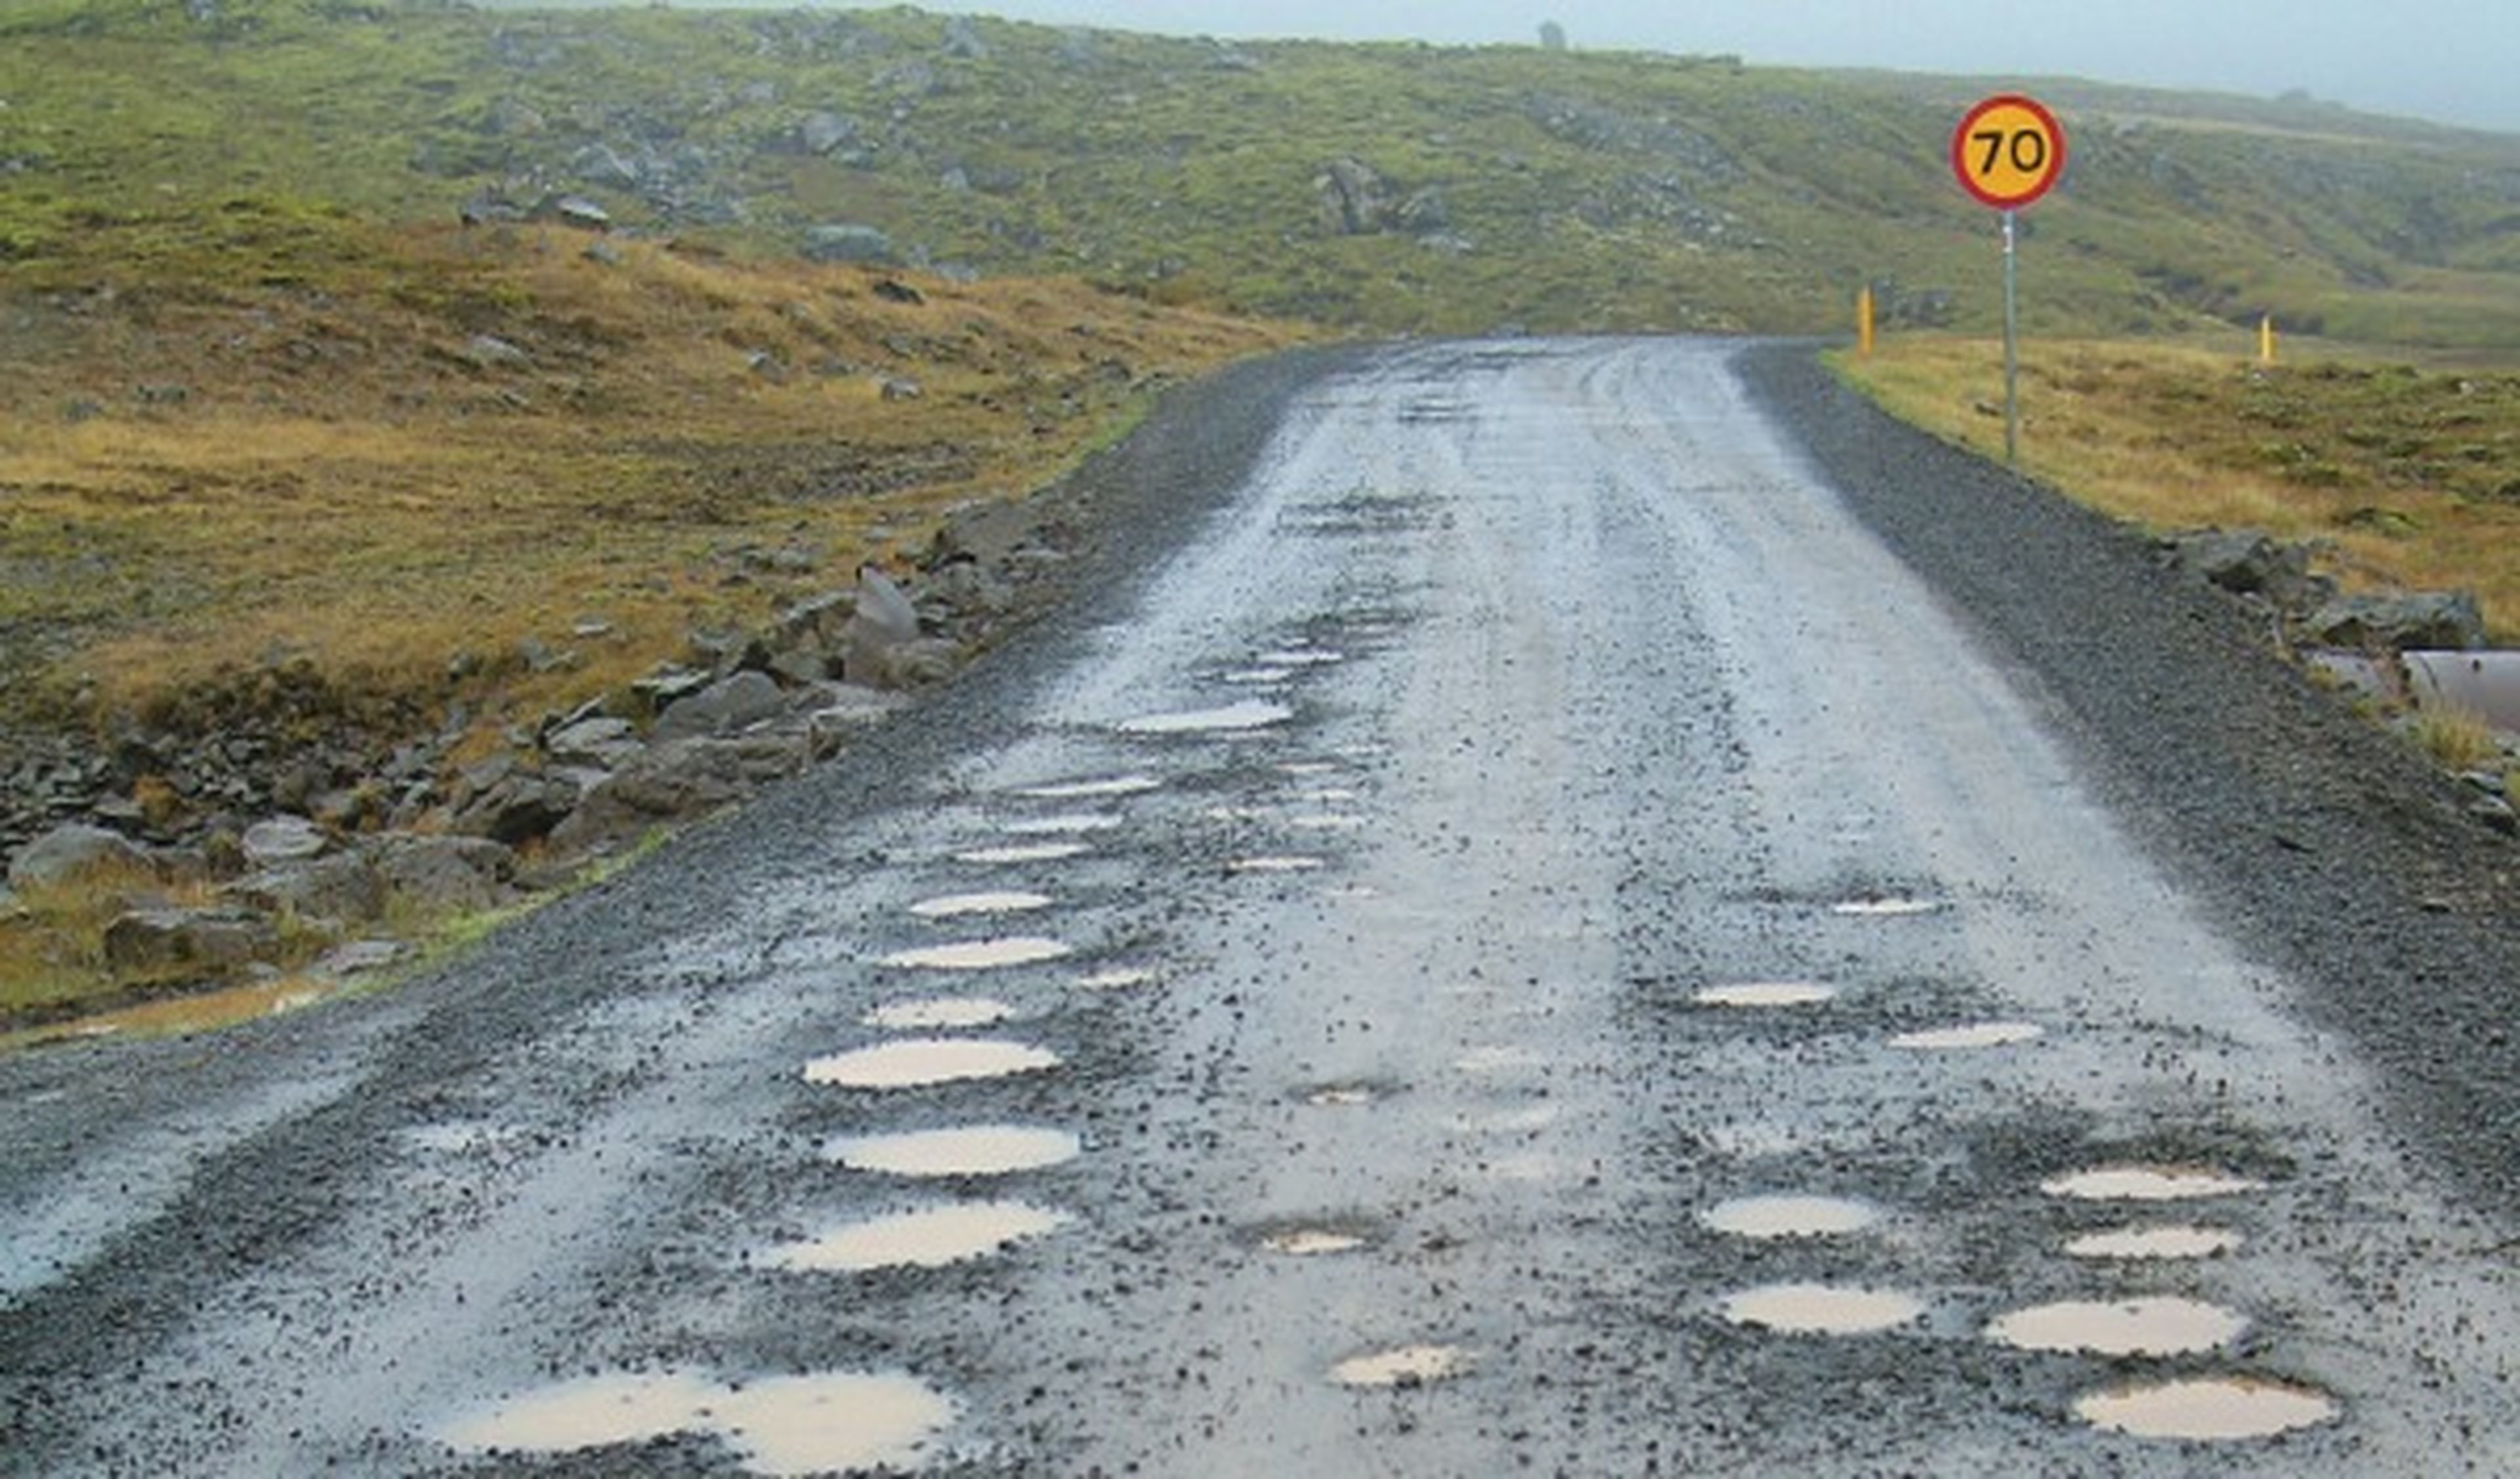 Conducir en Islandia: un paraíso para los 4x4